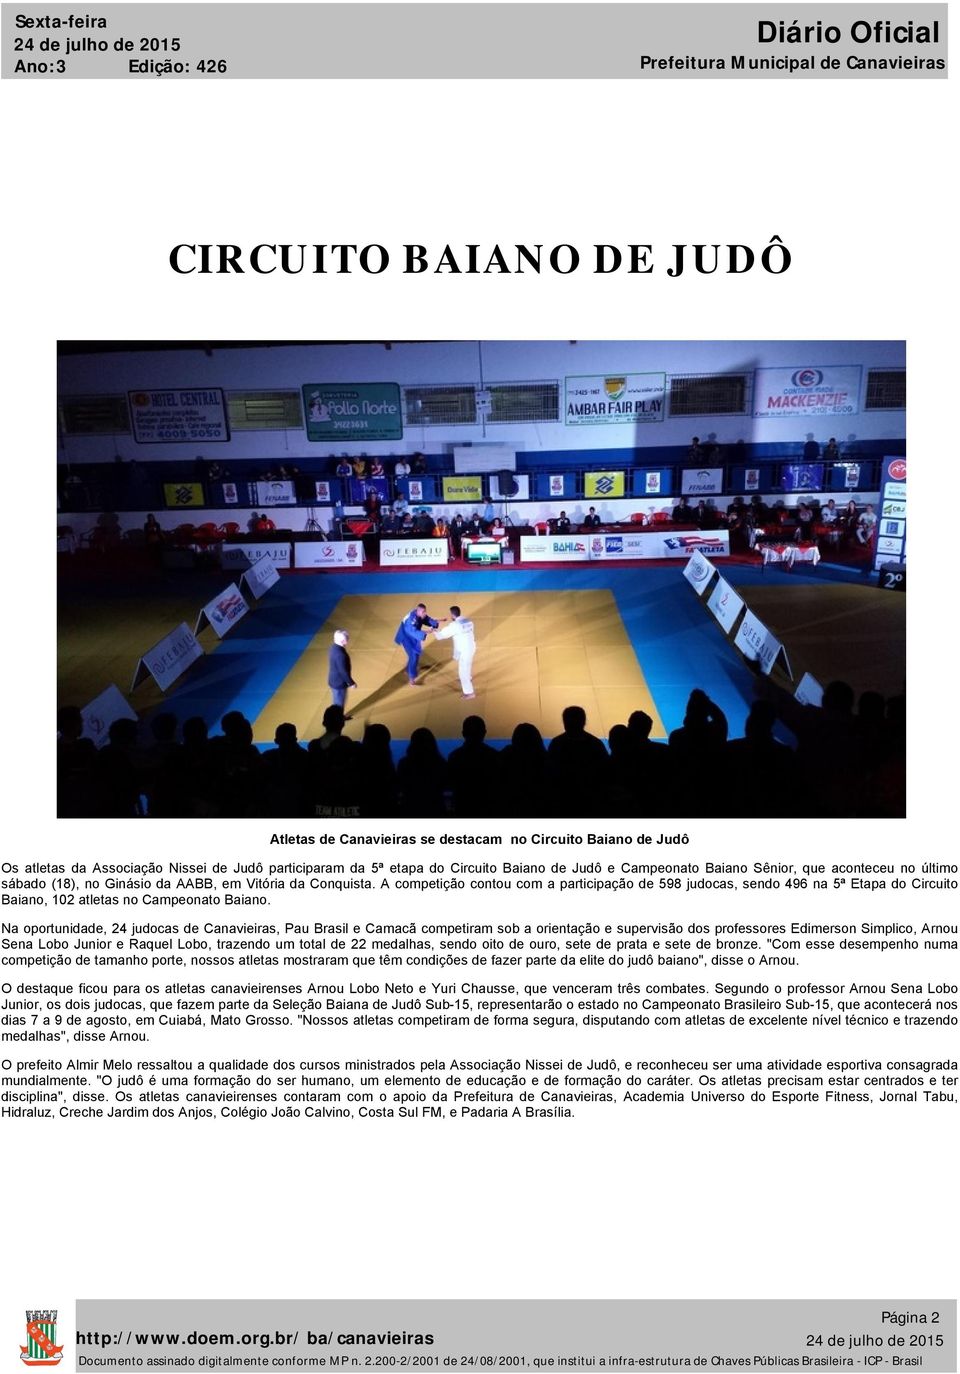 A competição contou com a participação de 598 judocas, sendo 496 na 5ª Etapa do Circuito Baiano, 102 atletas no Campeonato Baiano.